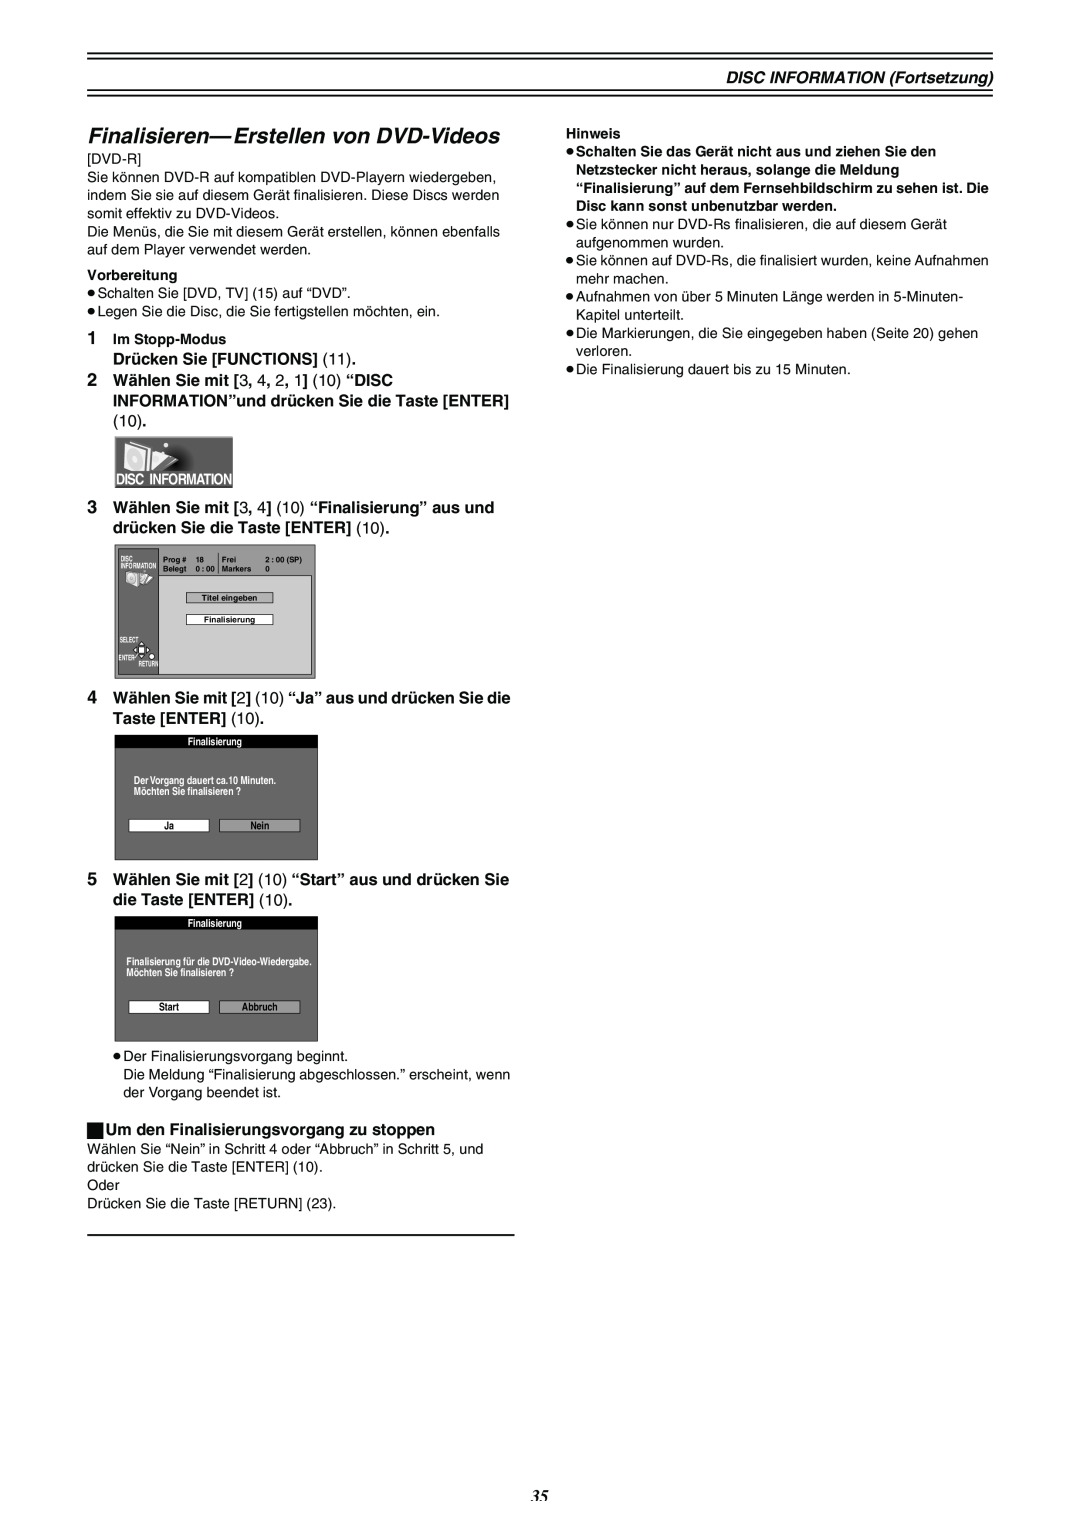 Panasonic DMR-E30 manual Finalisieren- Erstellen von DVD-Videos, Disc Information, Finalisierung 